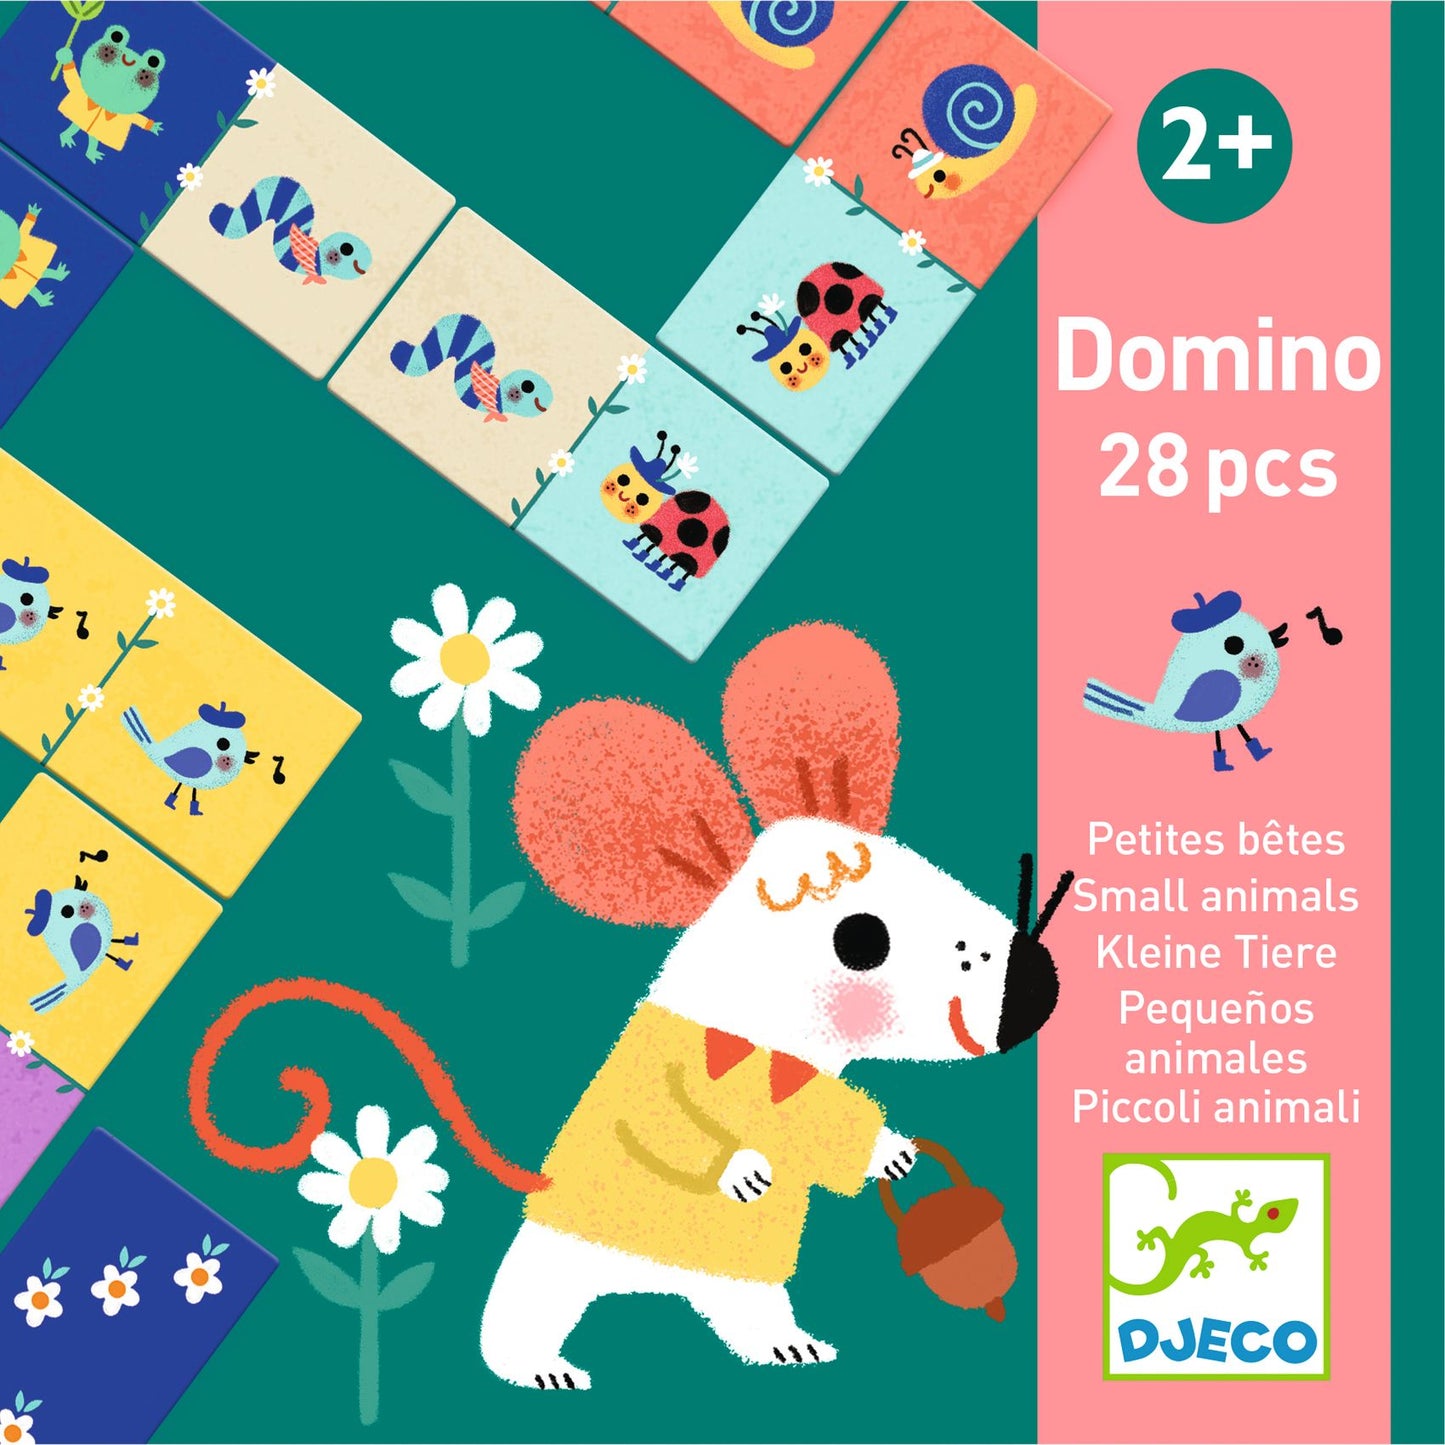 Domino - Piccoli animali